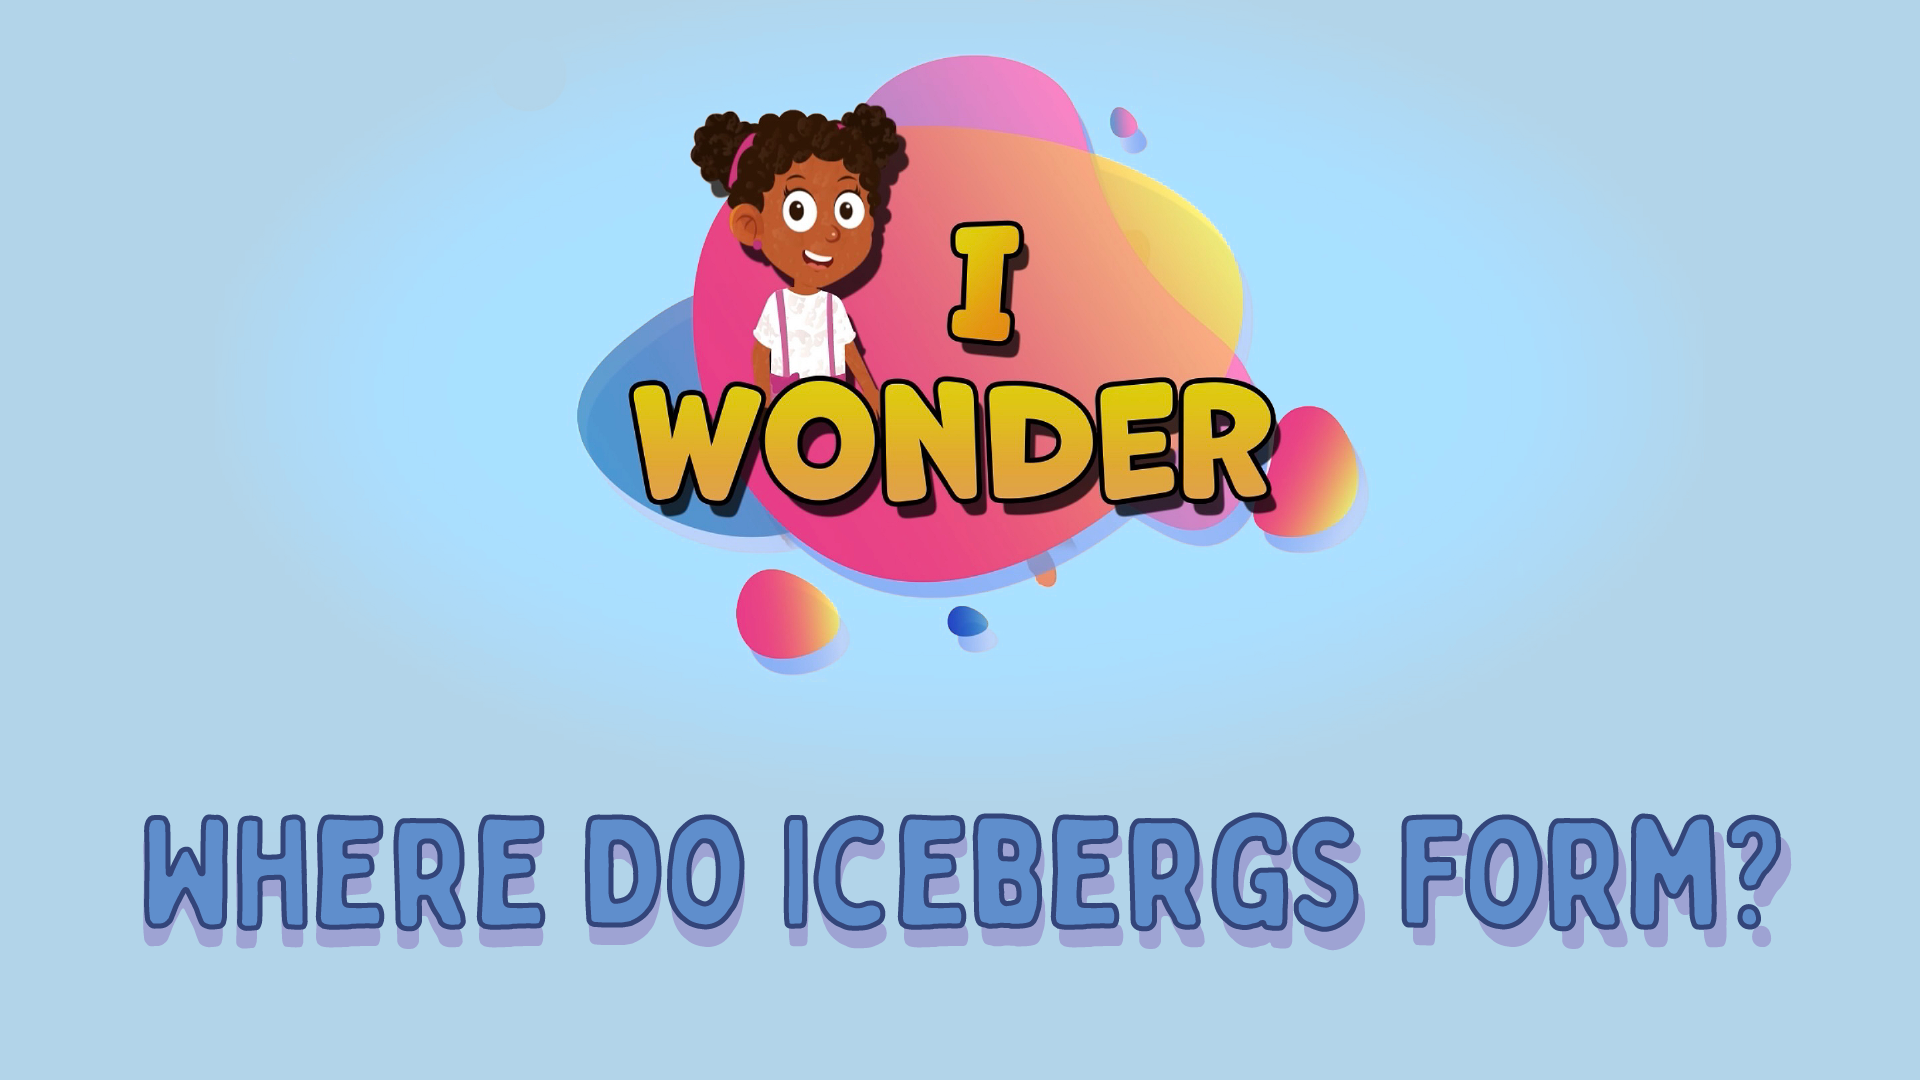 Where Do Icebergs Form?